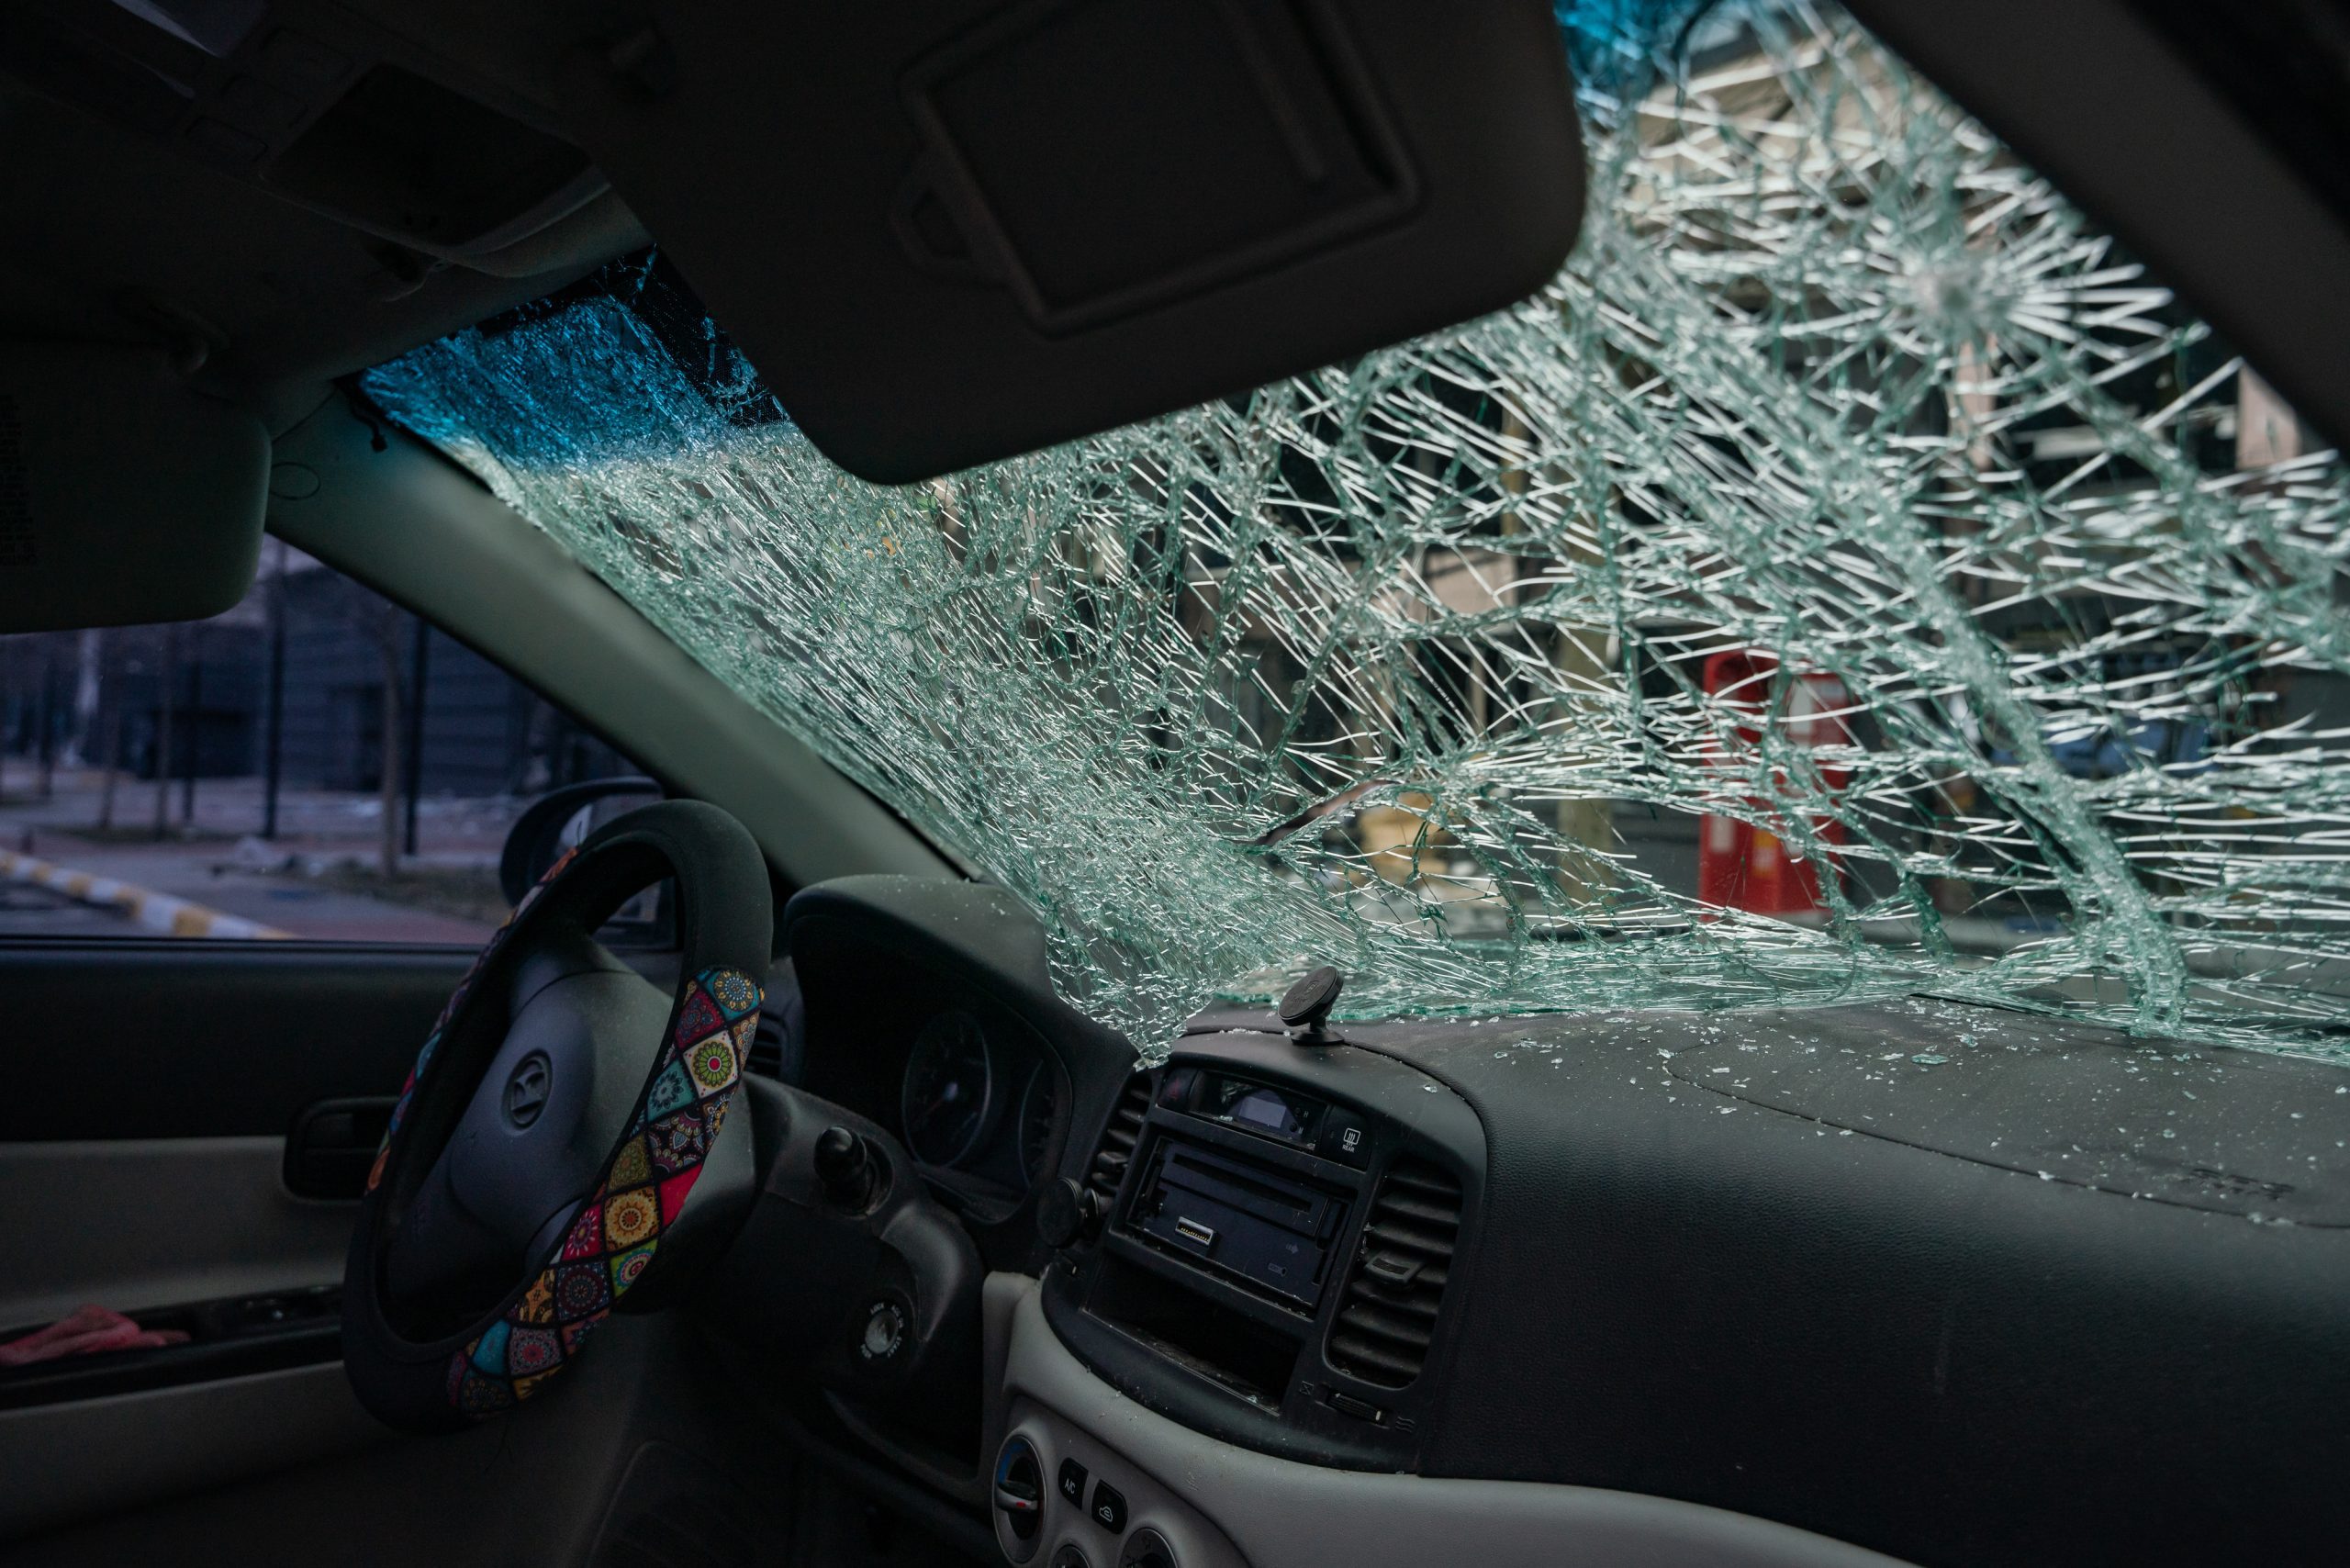 Szkło z rozbitego cywilnego samochodu. Rosjanie ostrzelali samochód na środku ulicy.